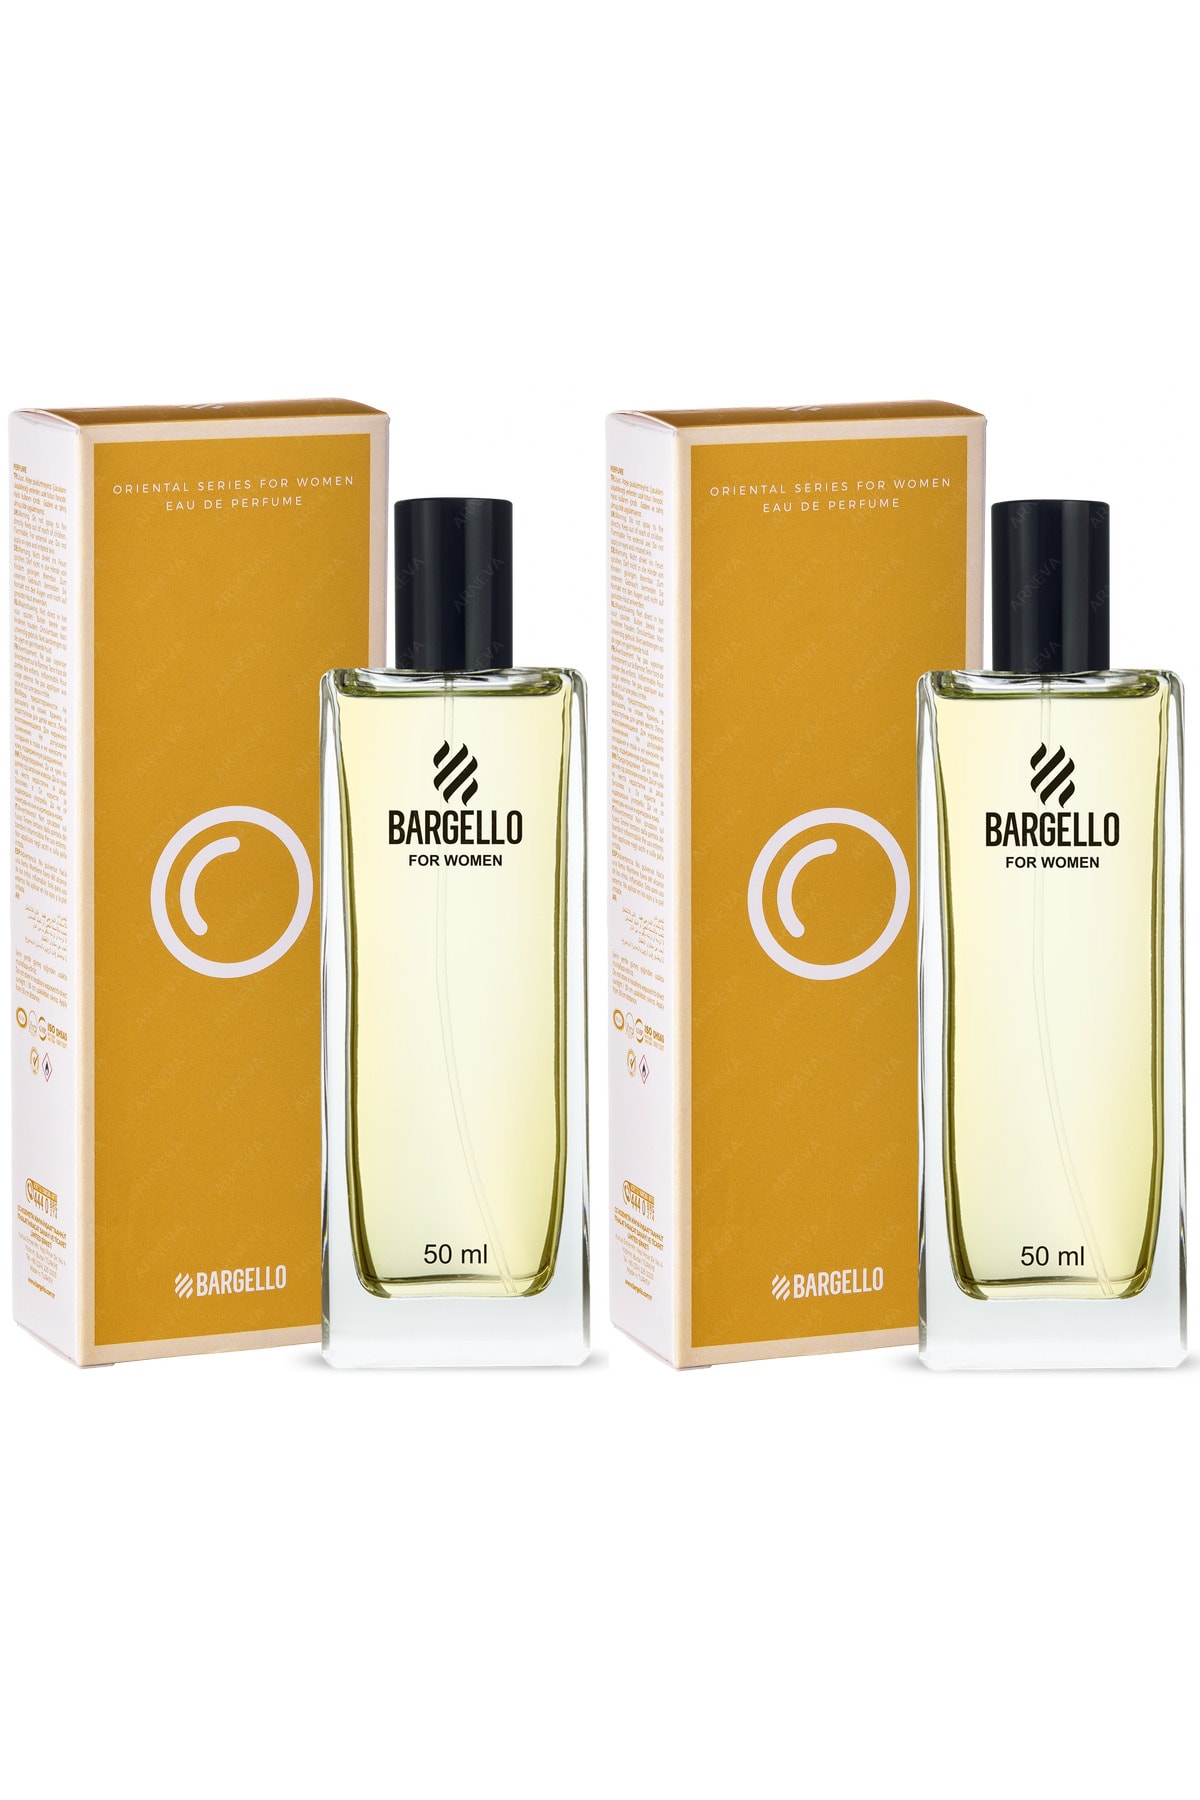 Naschrift Stuwkracht Groet Bargello 103 Oriental Edp 2 Adet X 50 ml Kadın Parfüm Fiyatı, Yorumları -  Trendyol